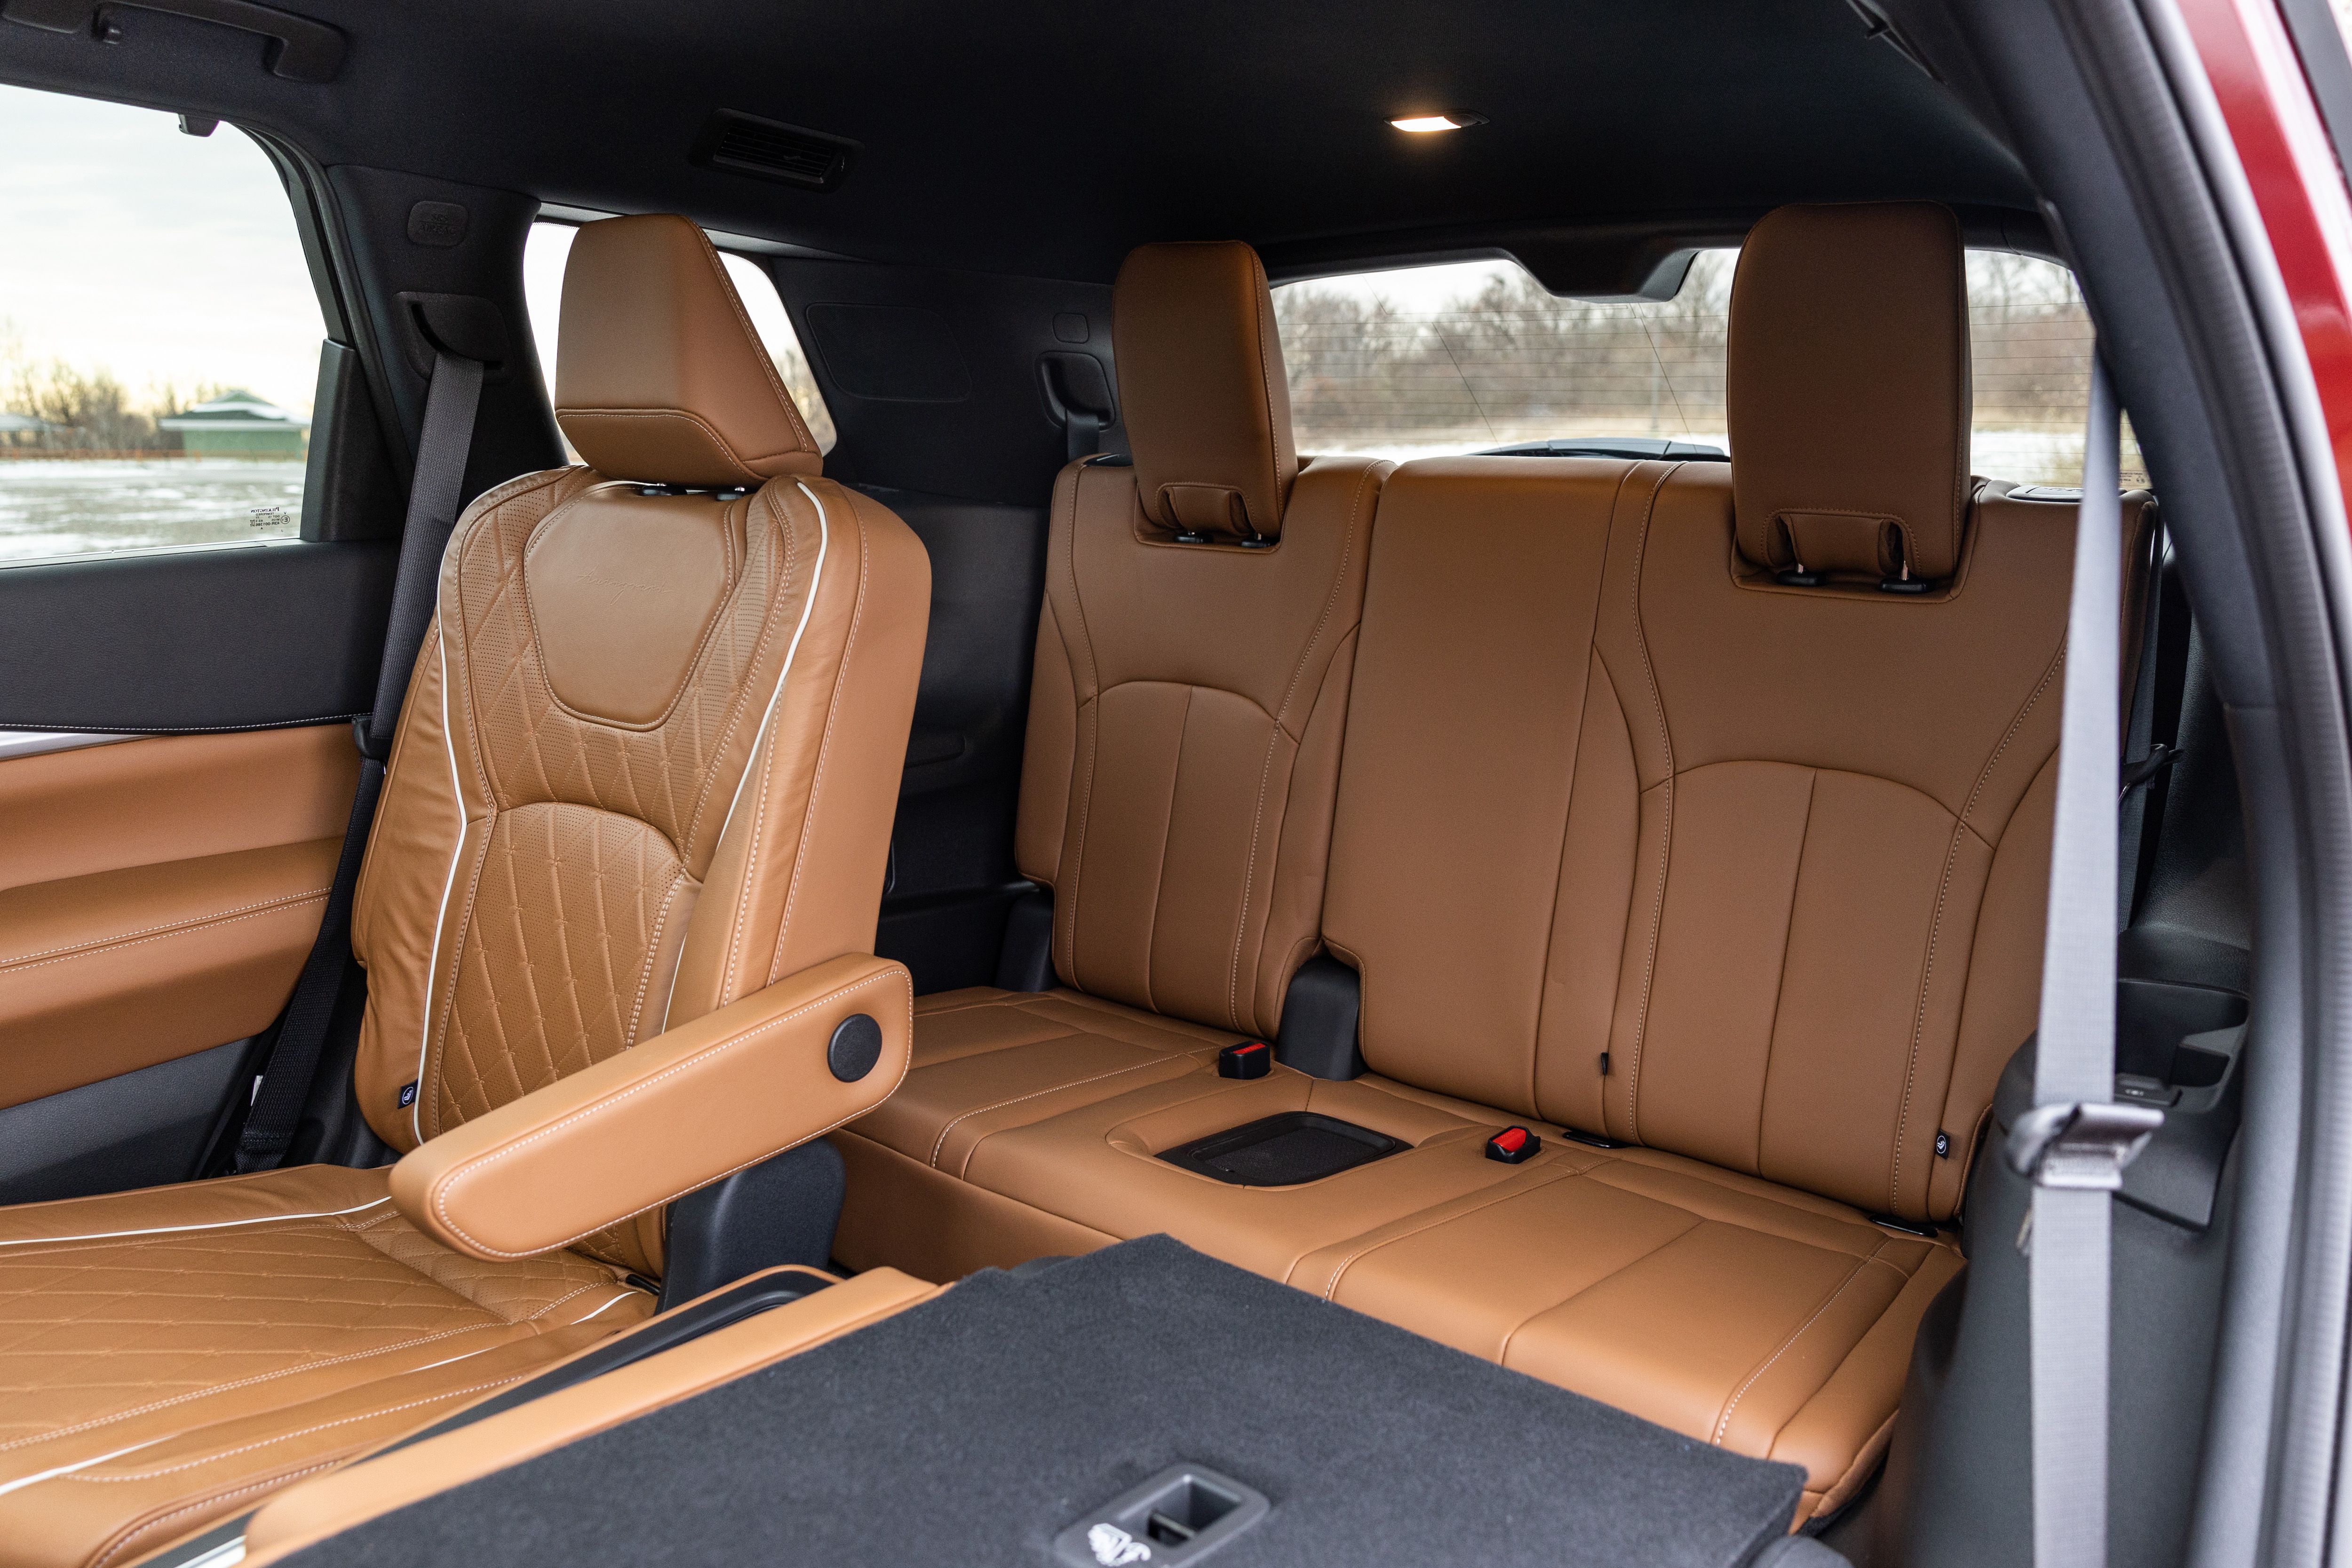 Infiniti Q60 interior - Seats